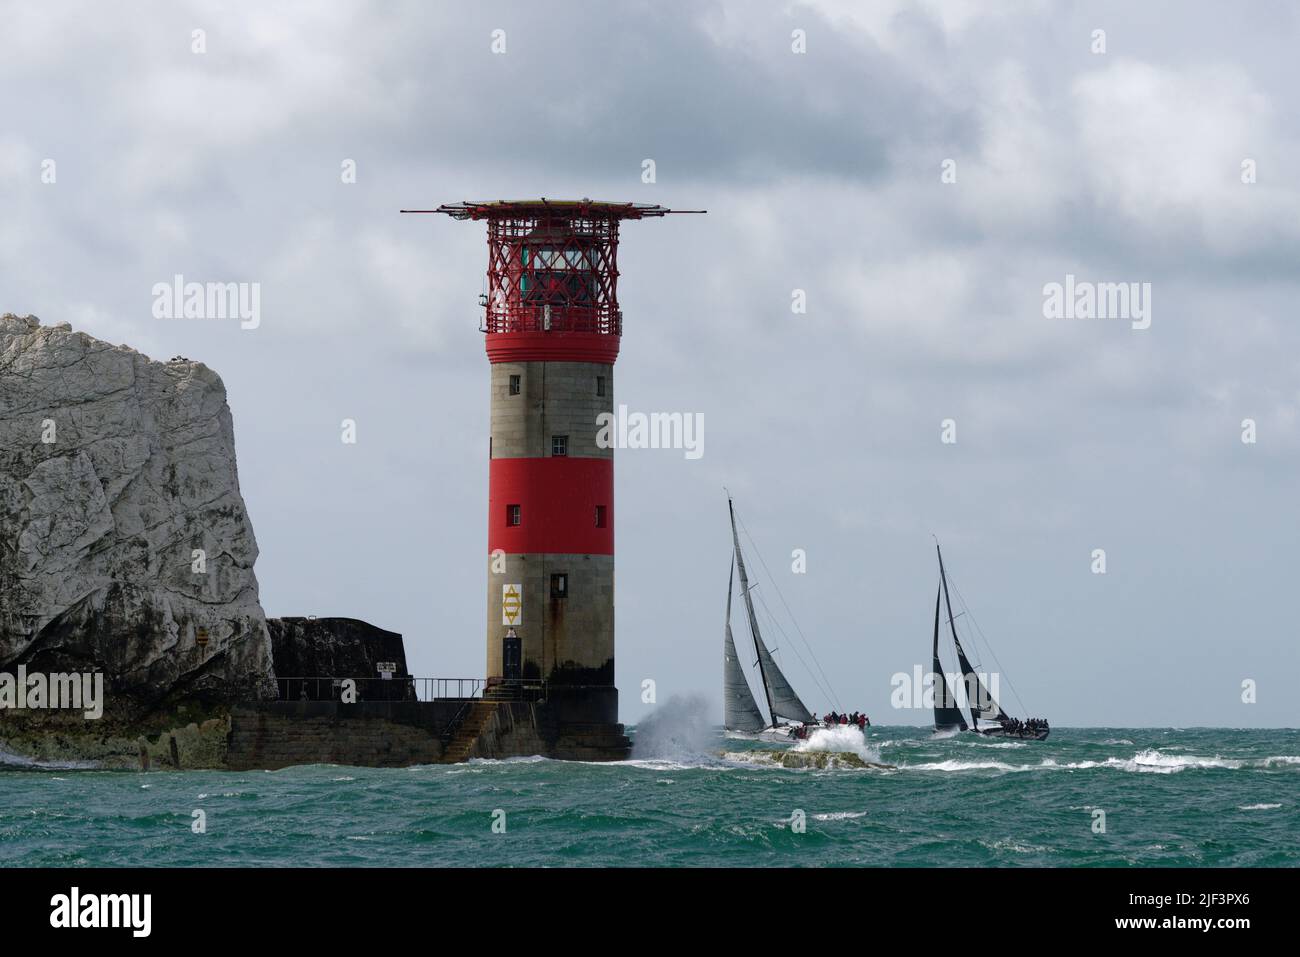 Dos yates de vela, Baraka y Dark'N'Stormy lucha por la posición en torno al faro de Needles en el extremo occidental de la isla de Wight Foto de stock